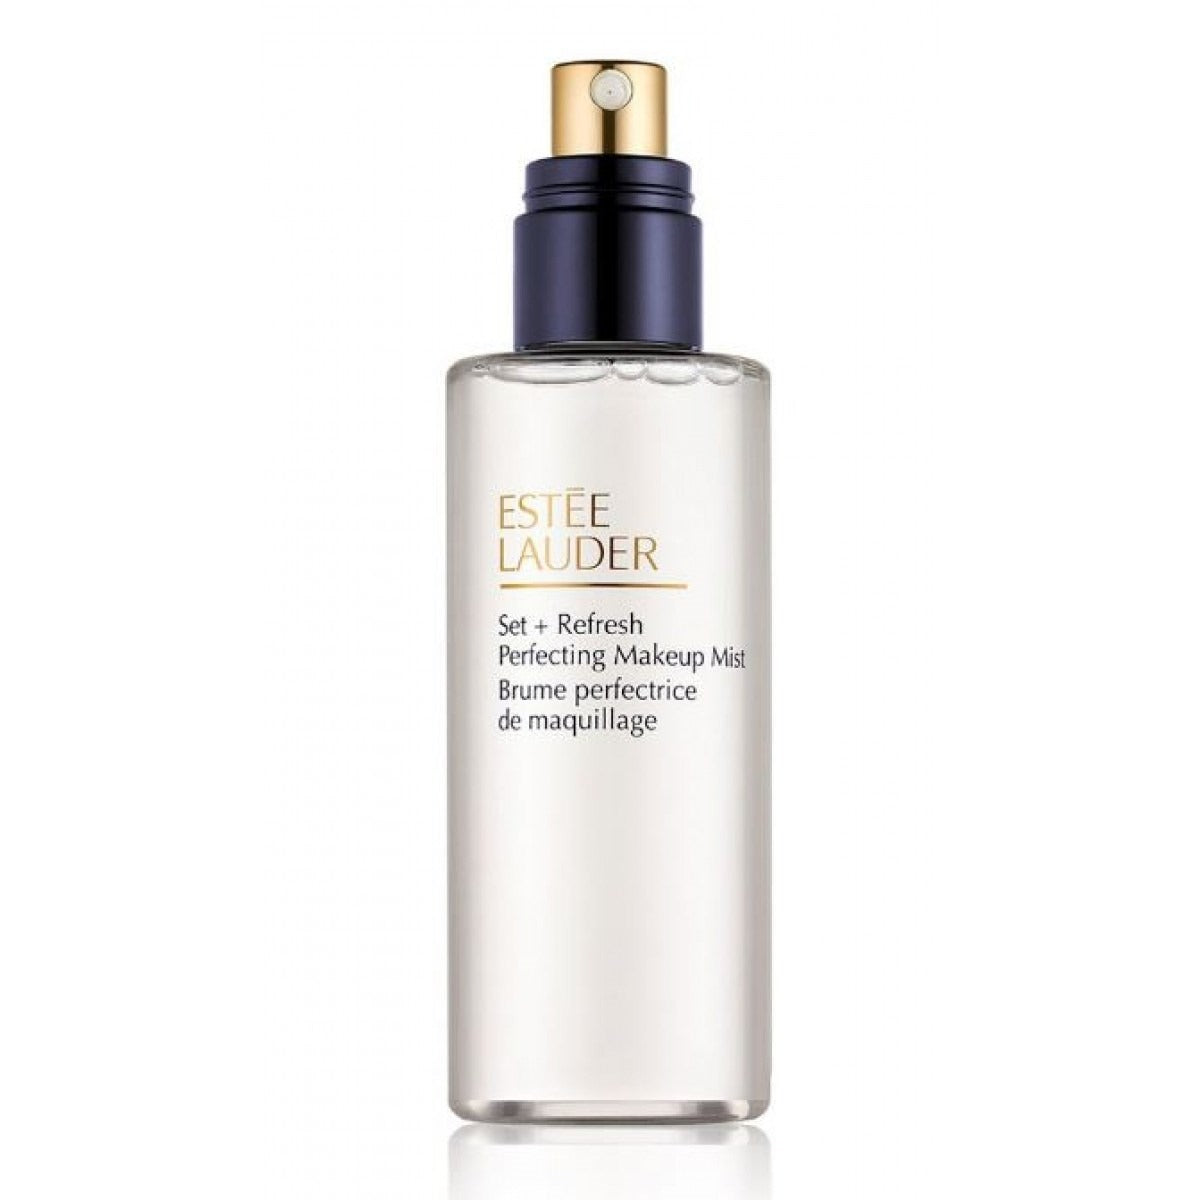 Estee Lauder Set + Refresh Perfecting Makeup Mist אסתי לאודר פריימר לרענון העור ולקיבוע איפור